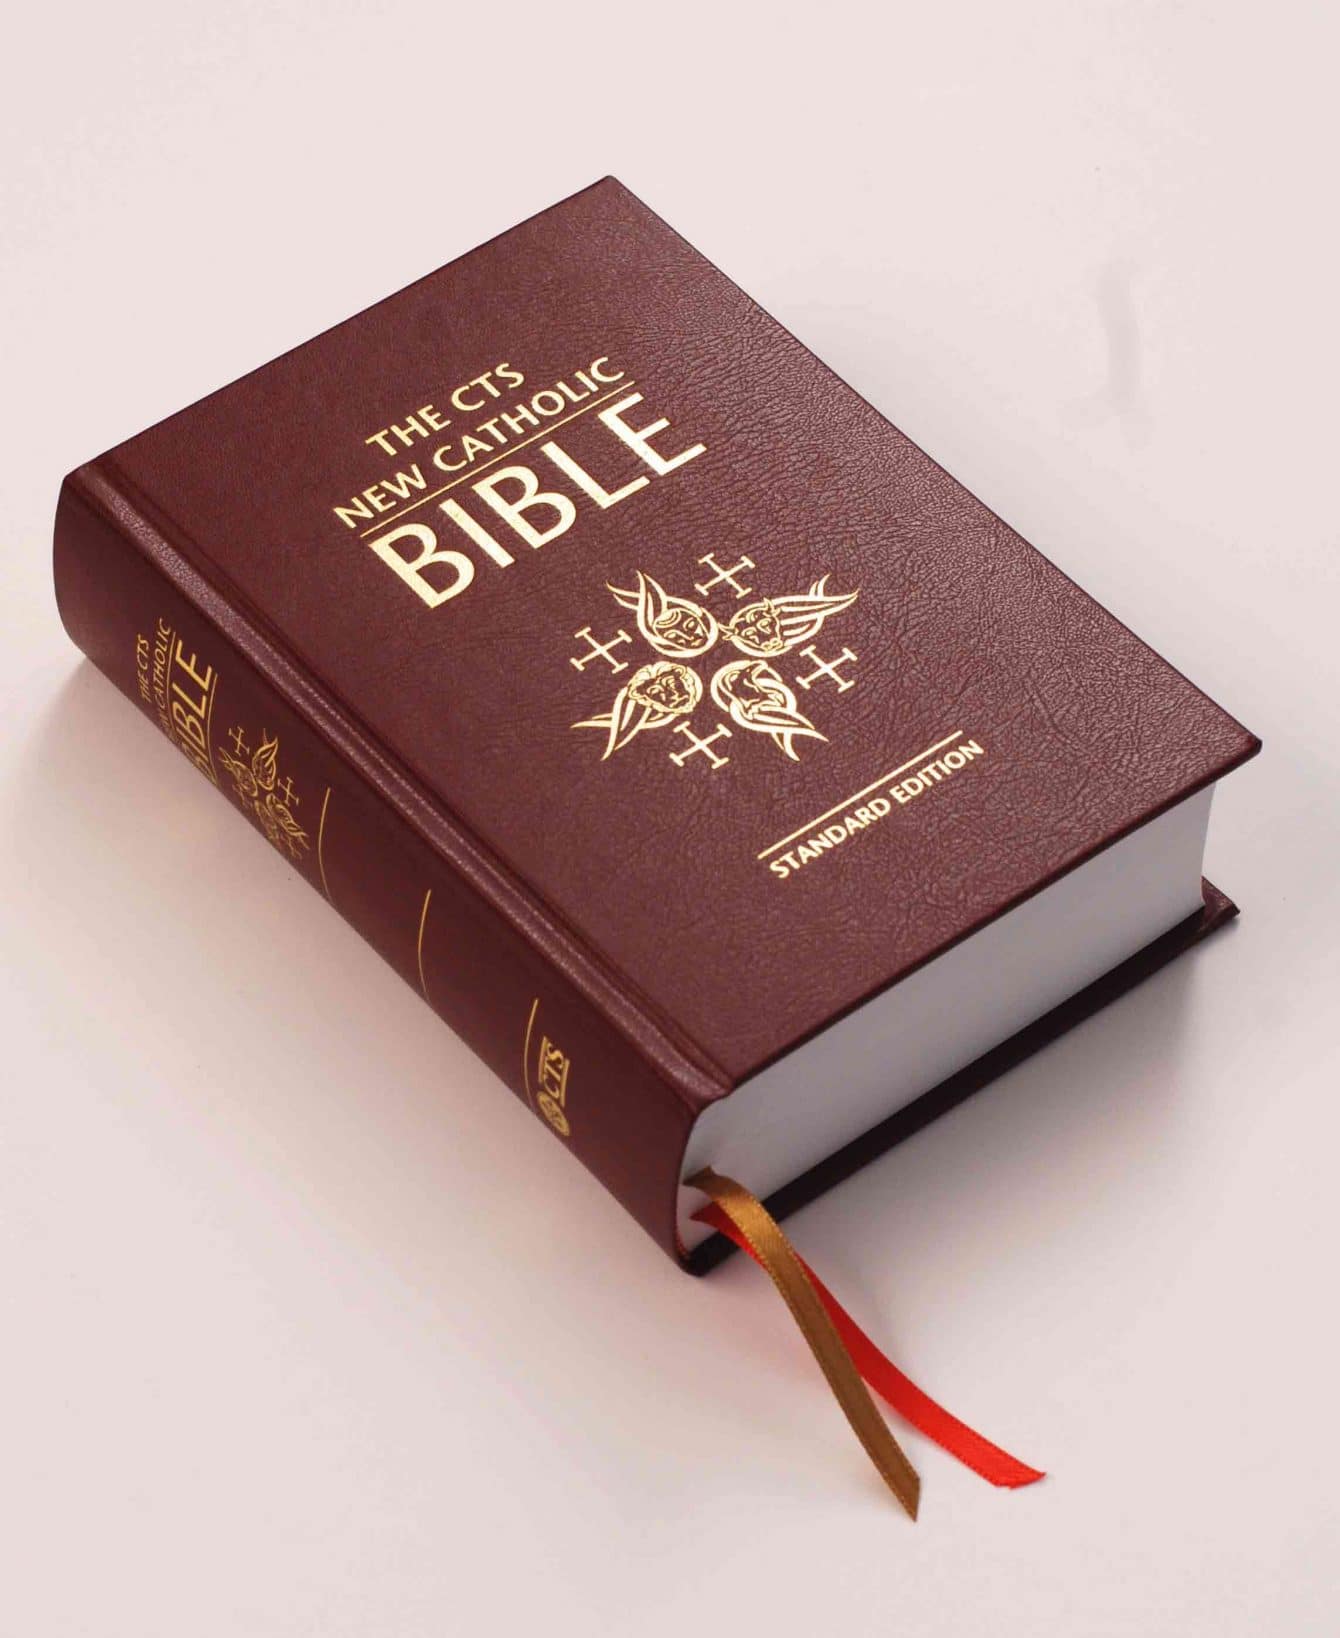 Insolite : dans ce pays, la vente de la bible est désormais interdite. Voici les raisons !